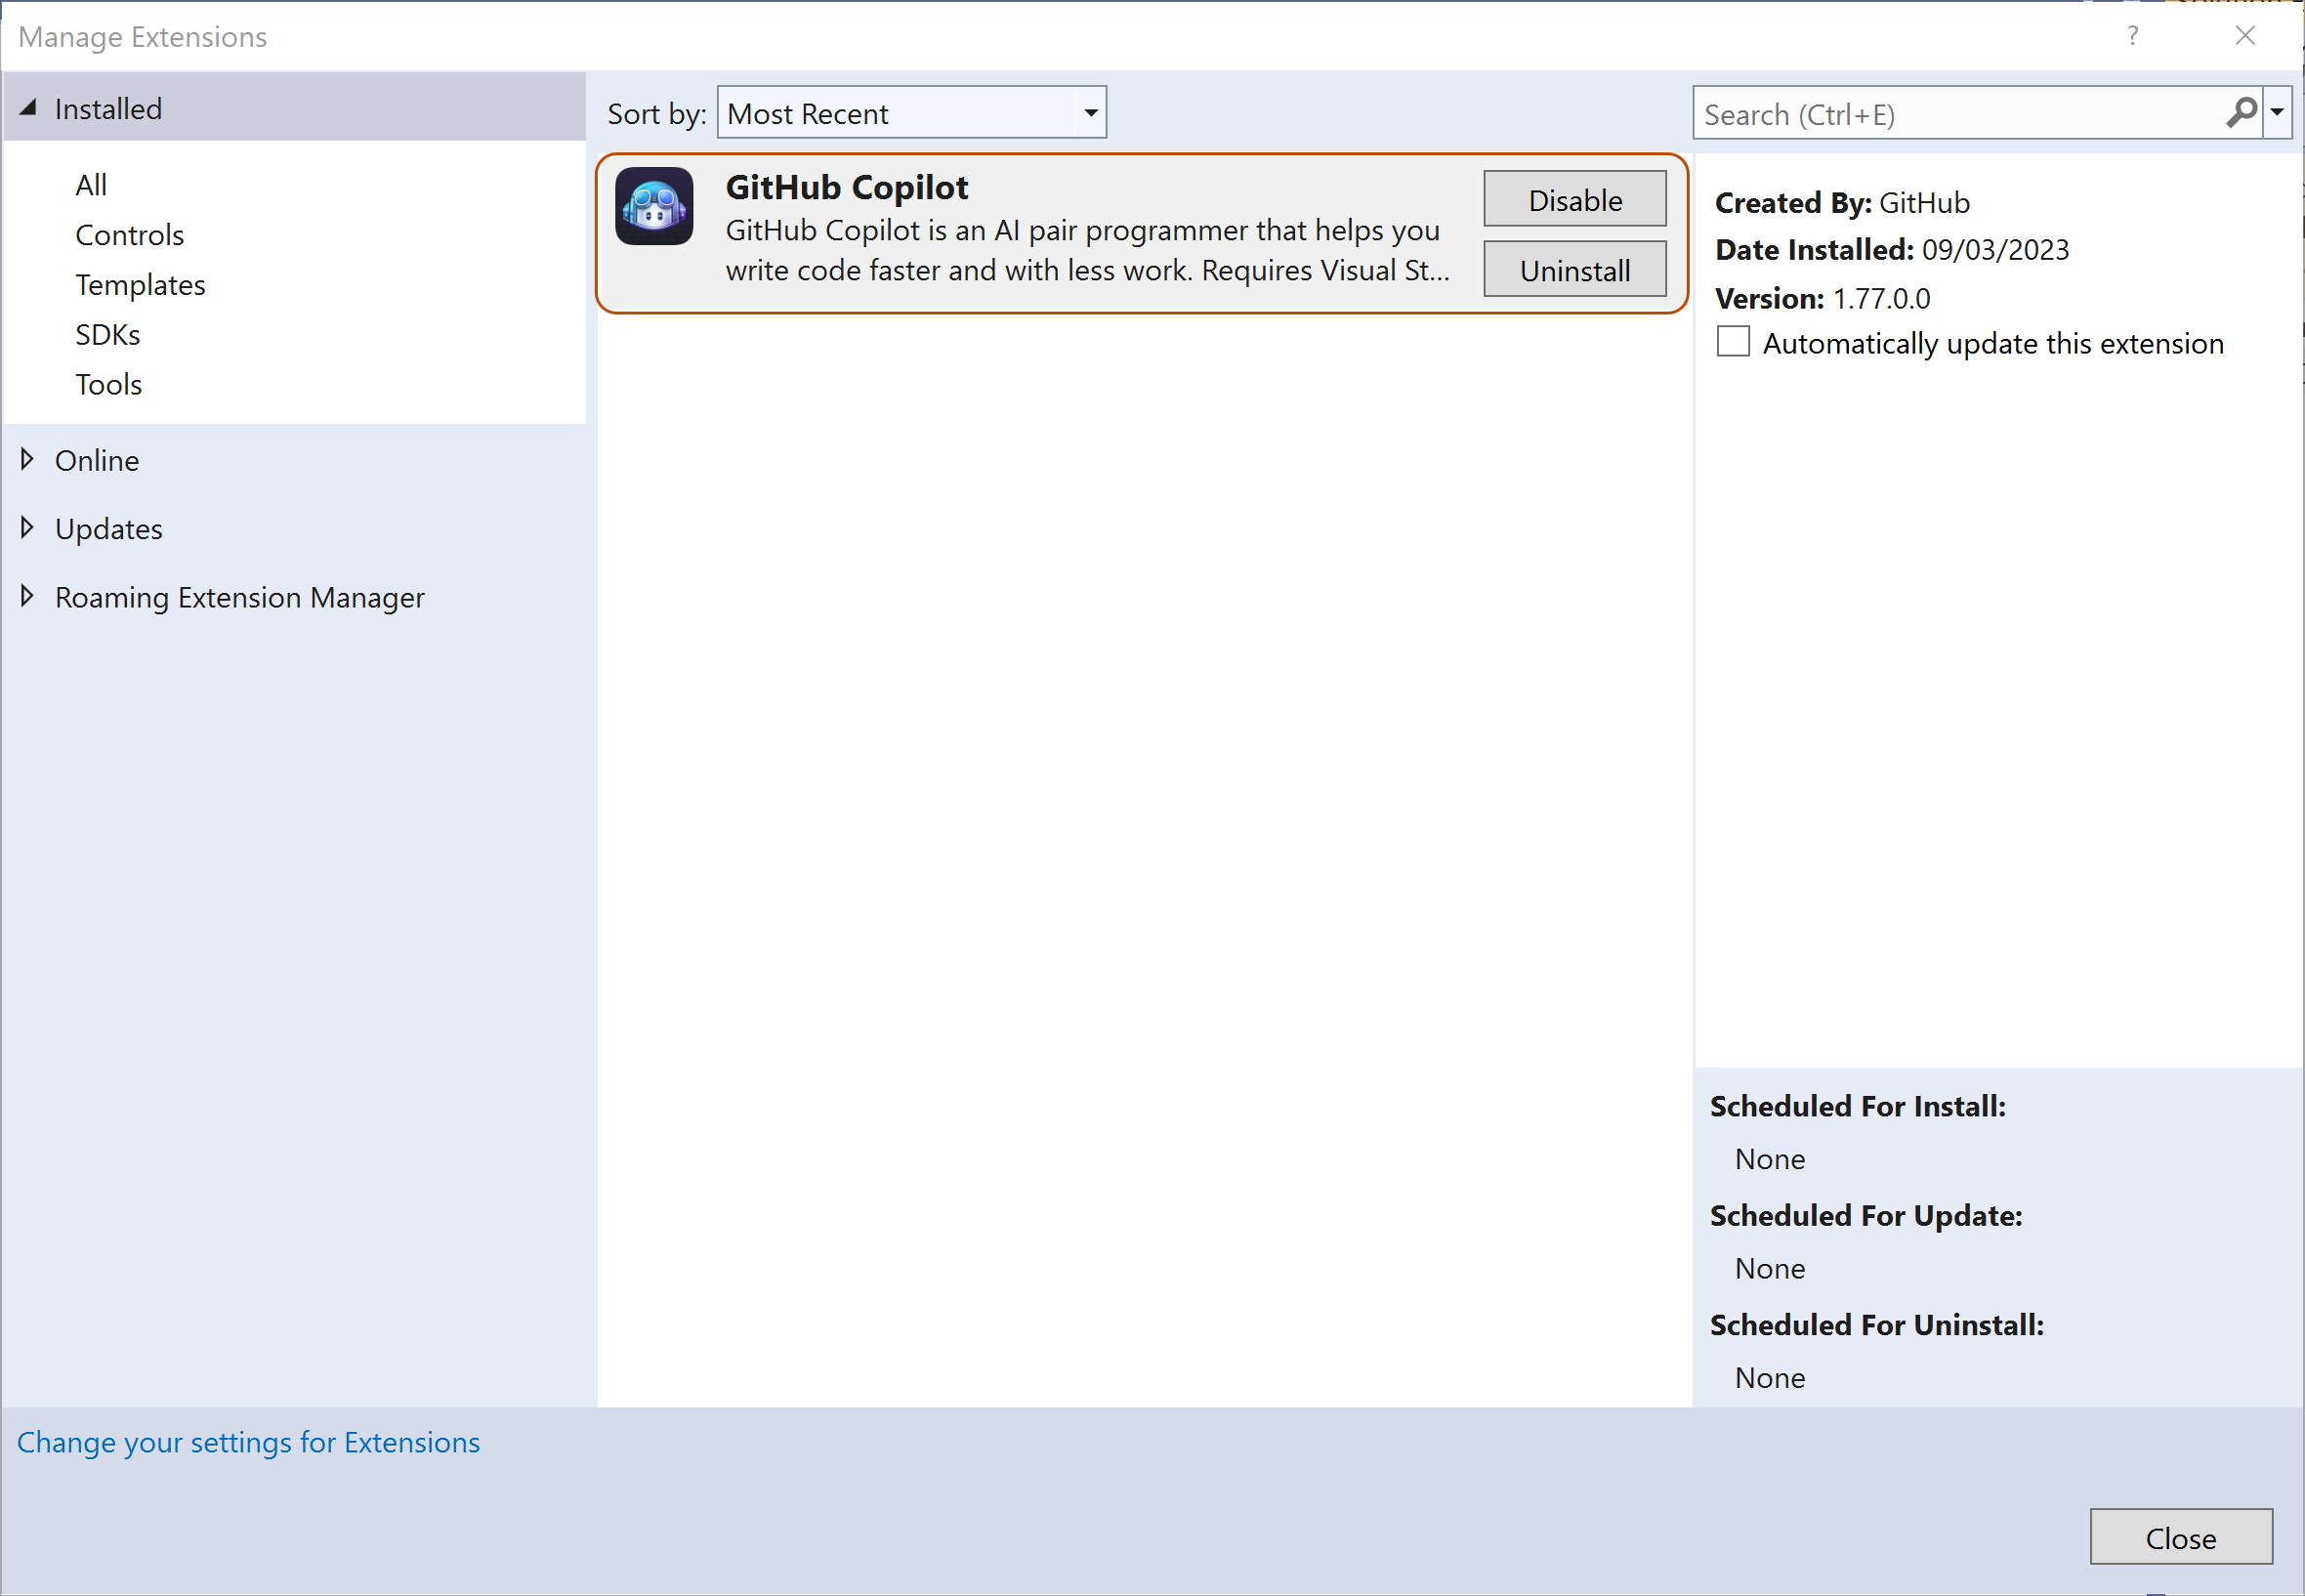 Снимок экрана: список установленных расширений в Visual Studio. Расширение "GitHub Copilot" выделено оранжевым контуром.